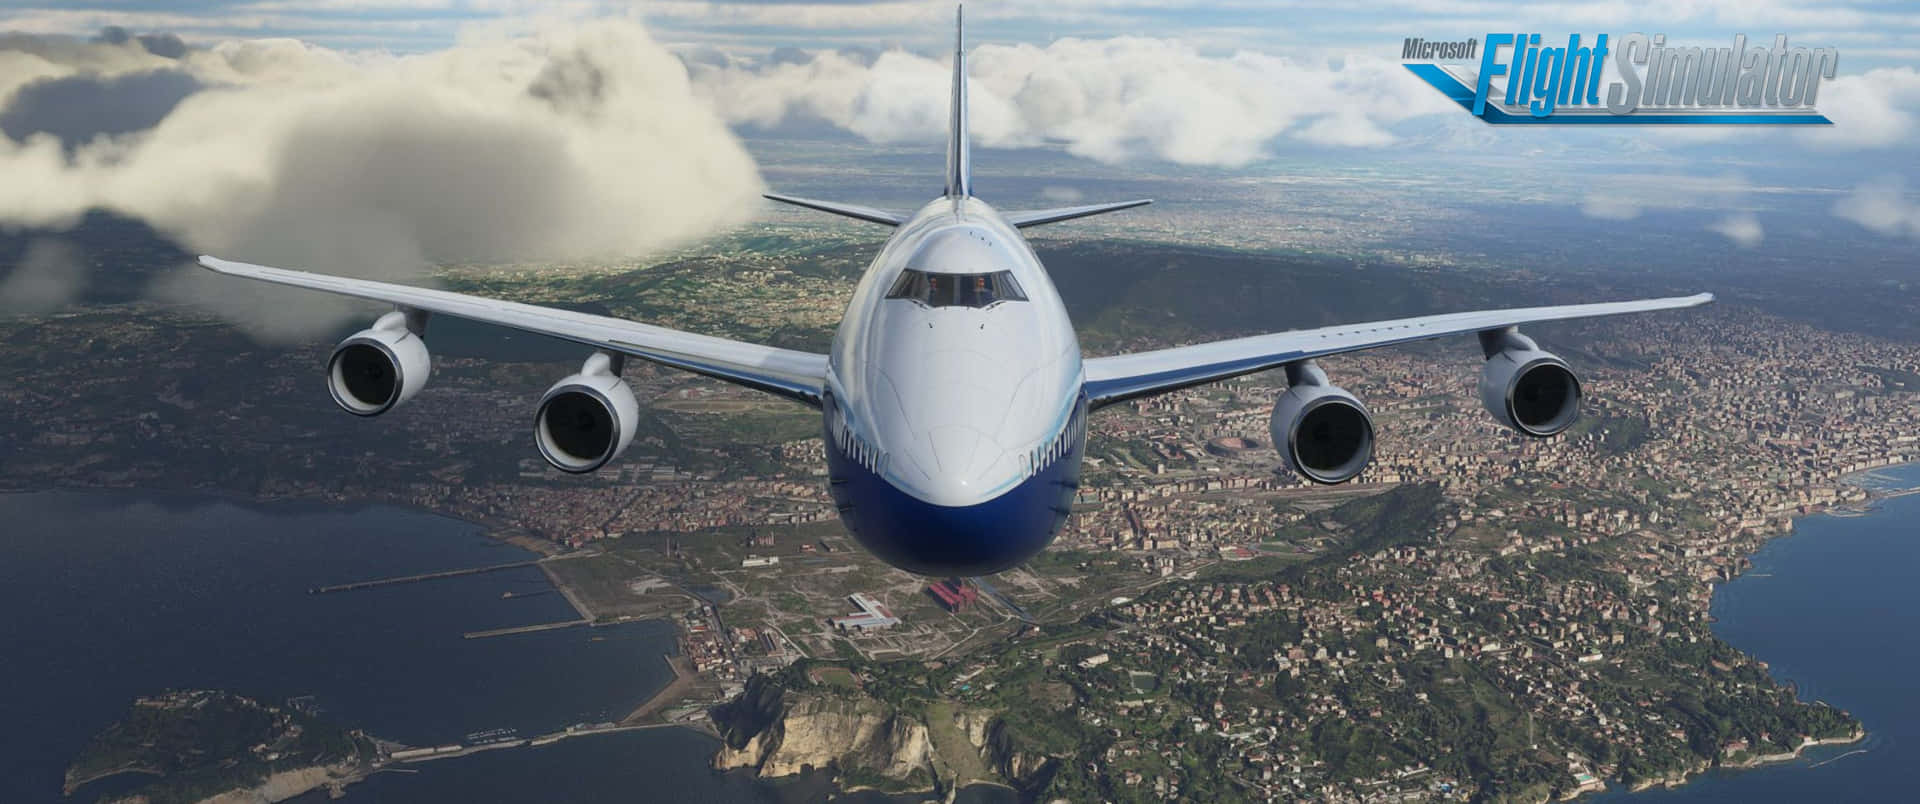 Flyghögt Genom Skyarna Med Microsoft Flight Simulator.